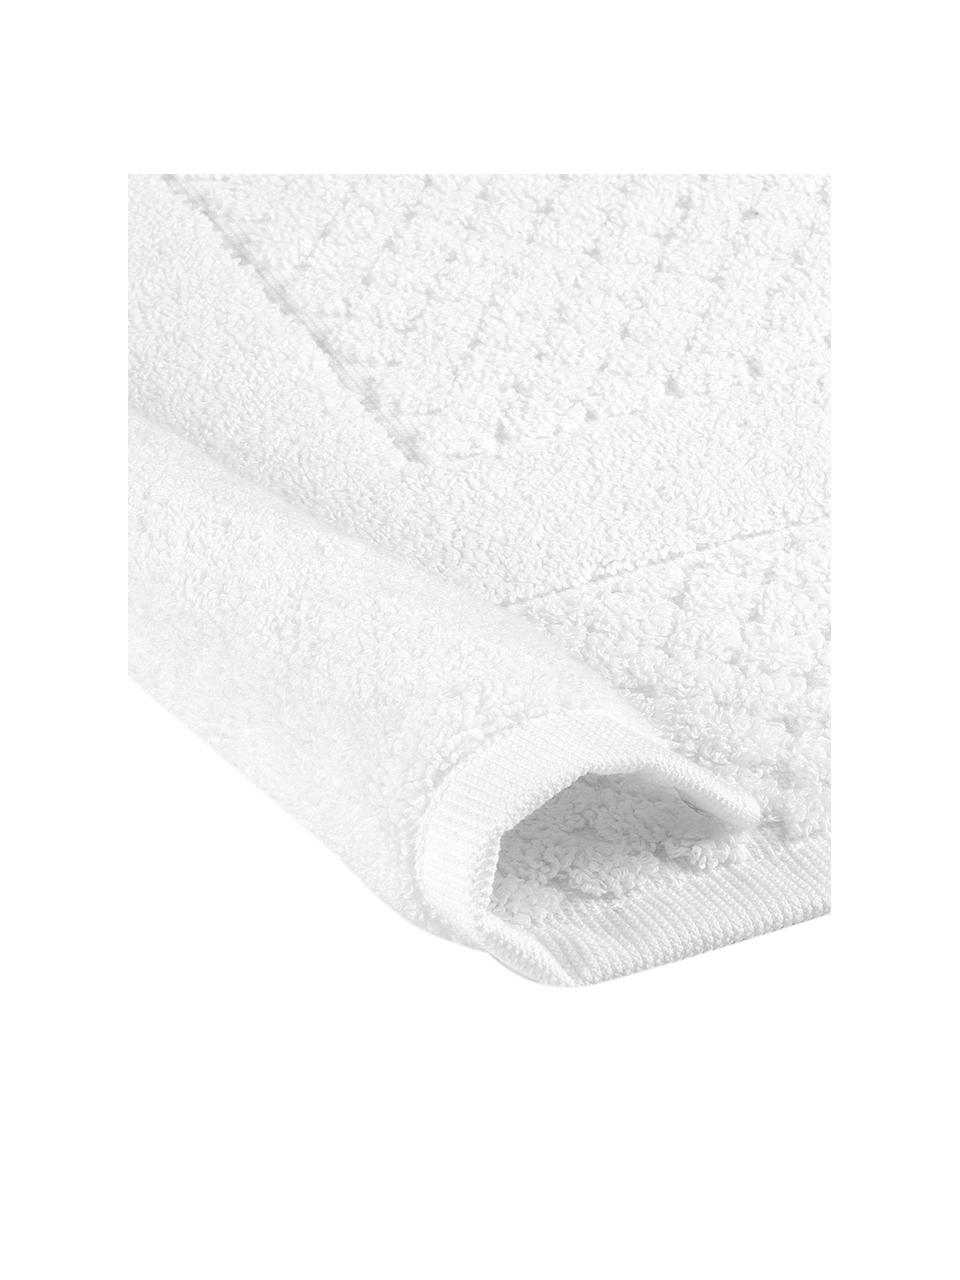 Badvorleger Katharina in Weiß mit Wabenmuster, 100% Baumwolle, schwere Qualität, 900 g/m², Weiß, B 50 x L 70 cm